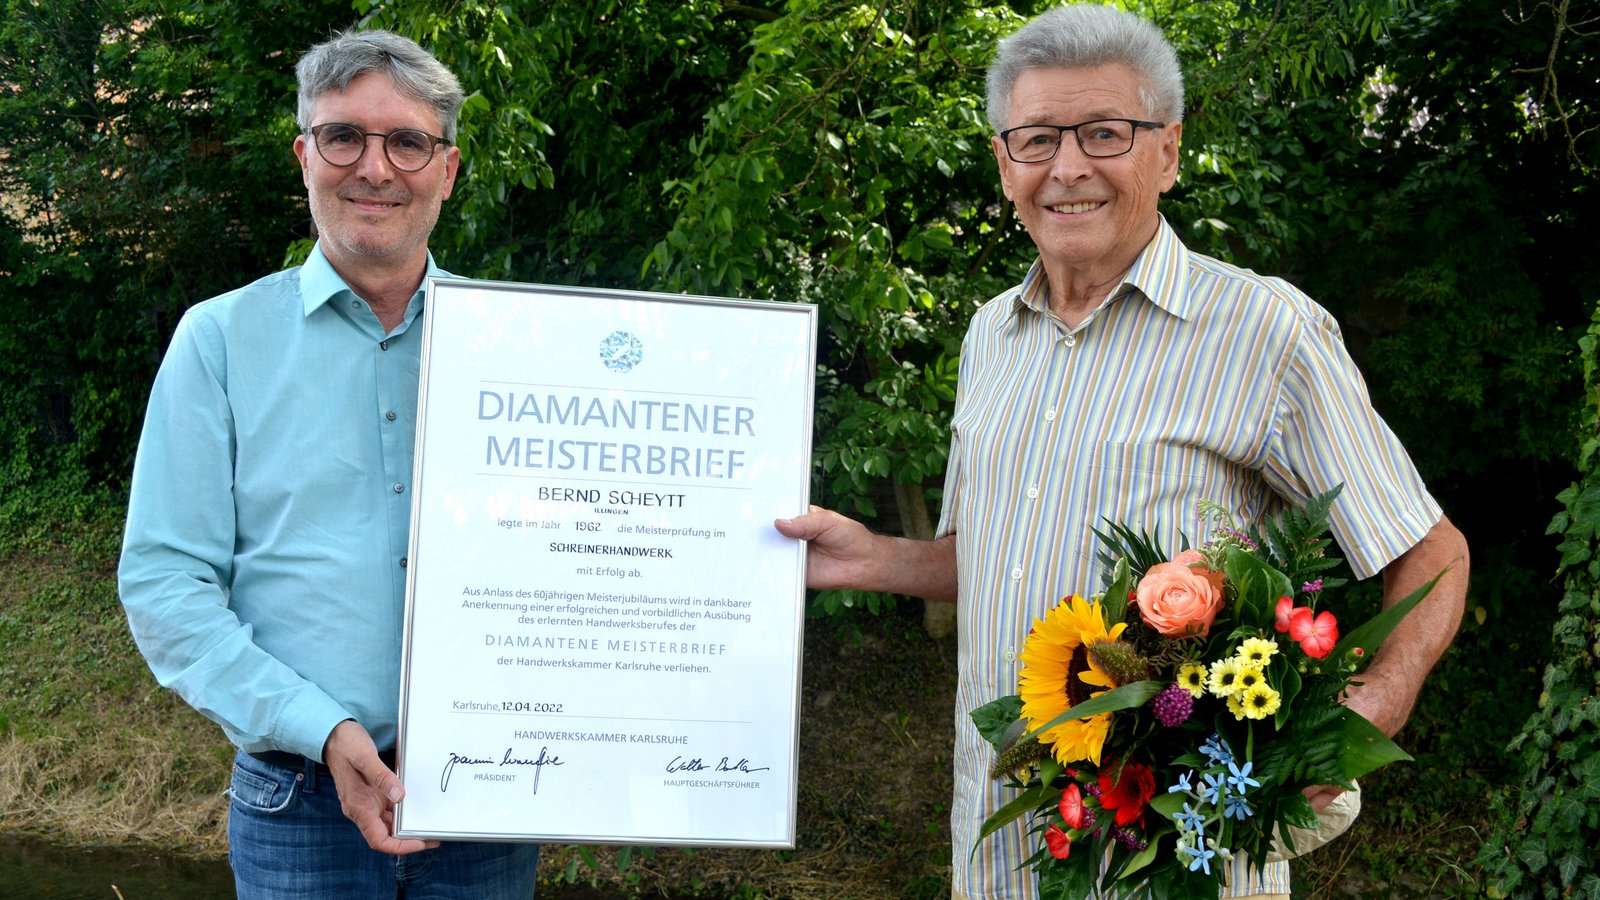 Bürgermeister Armin Pioch (links) und Bernd Scheytt mit dem Diamantenen Meisterbrief.  Foto: Stahlfeld